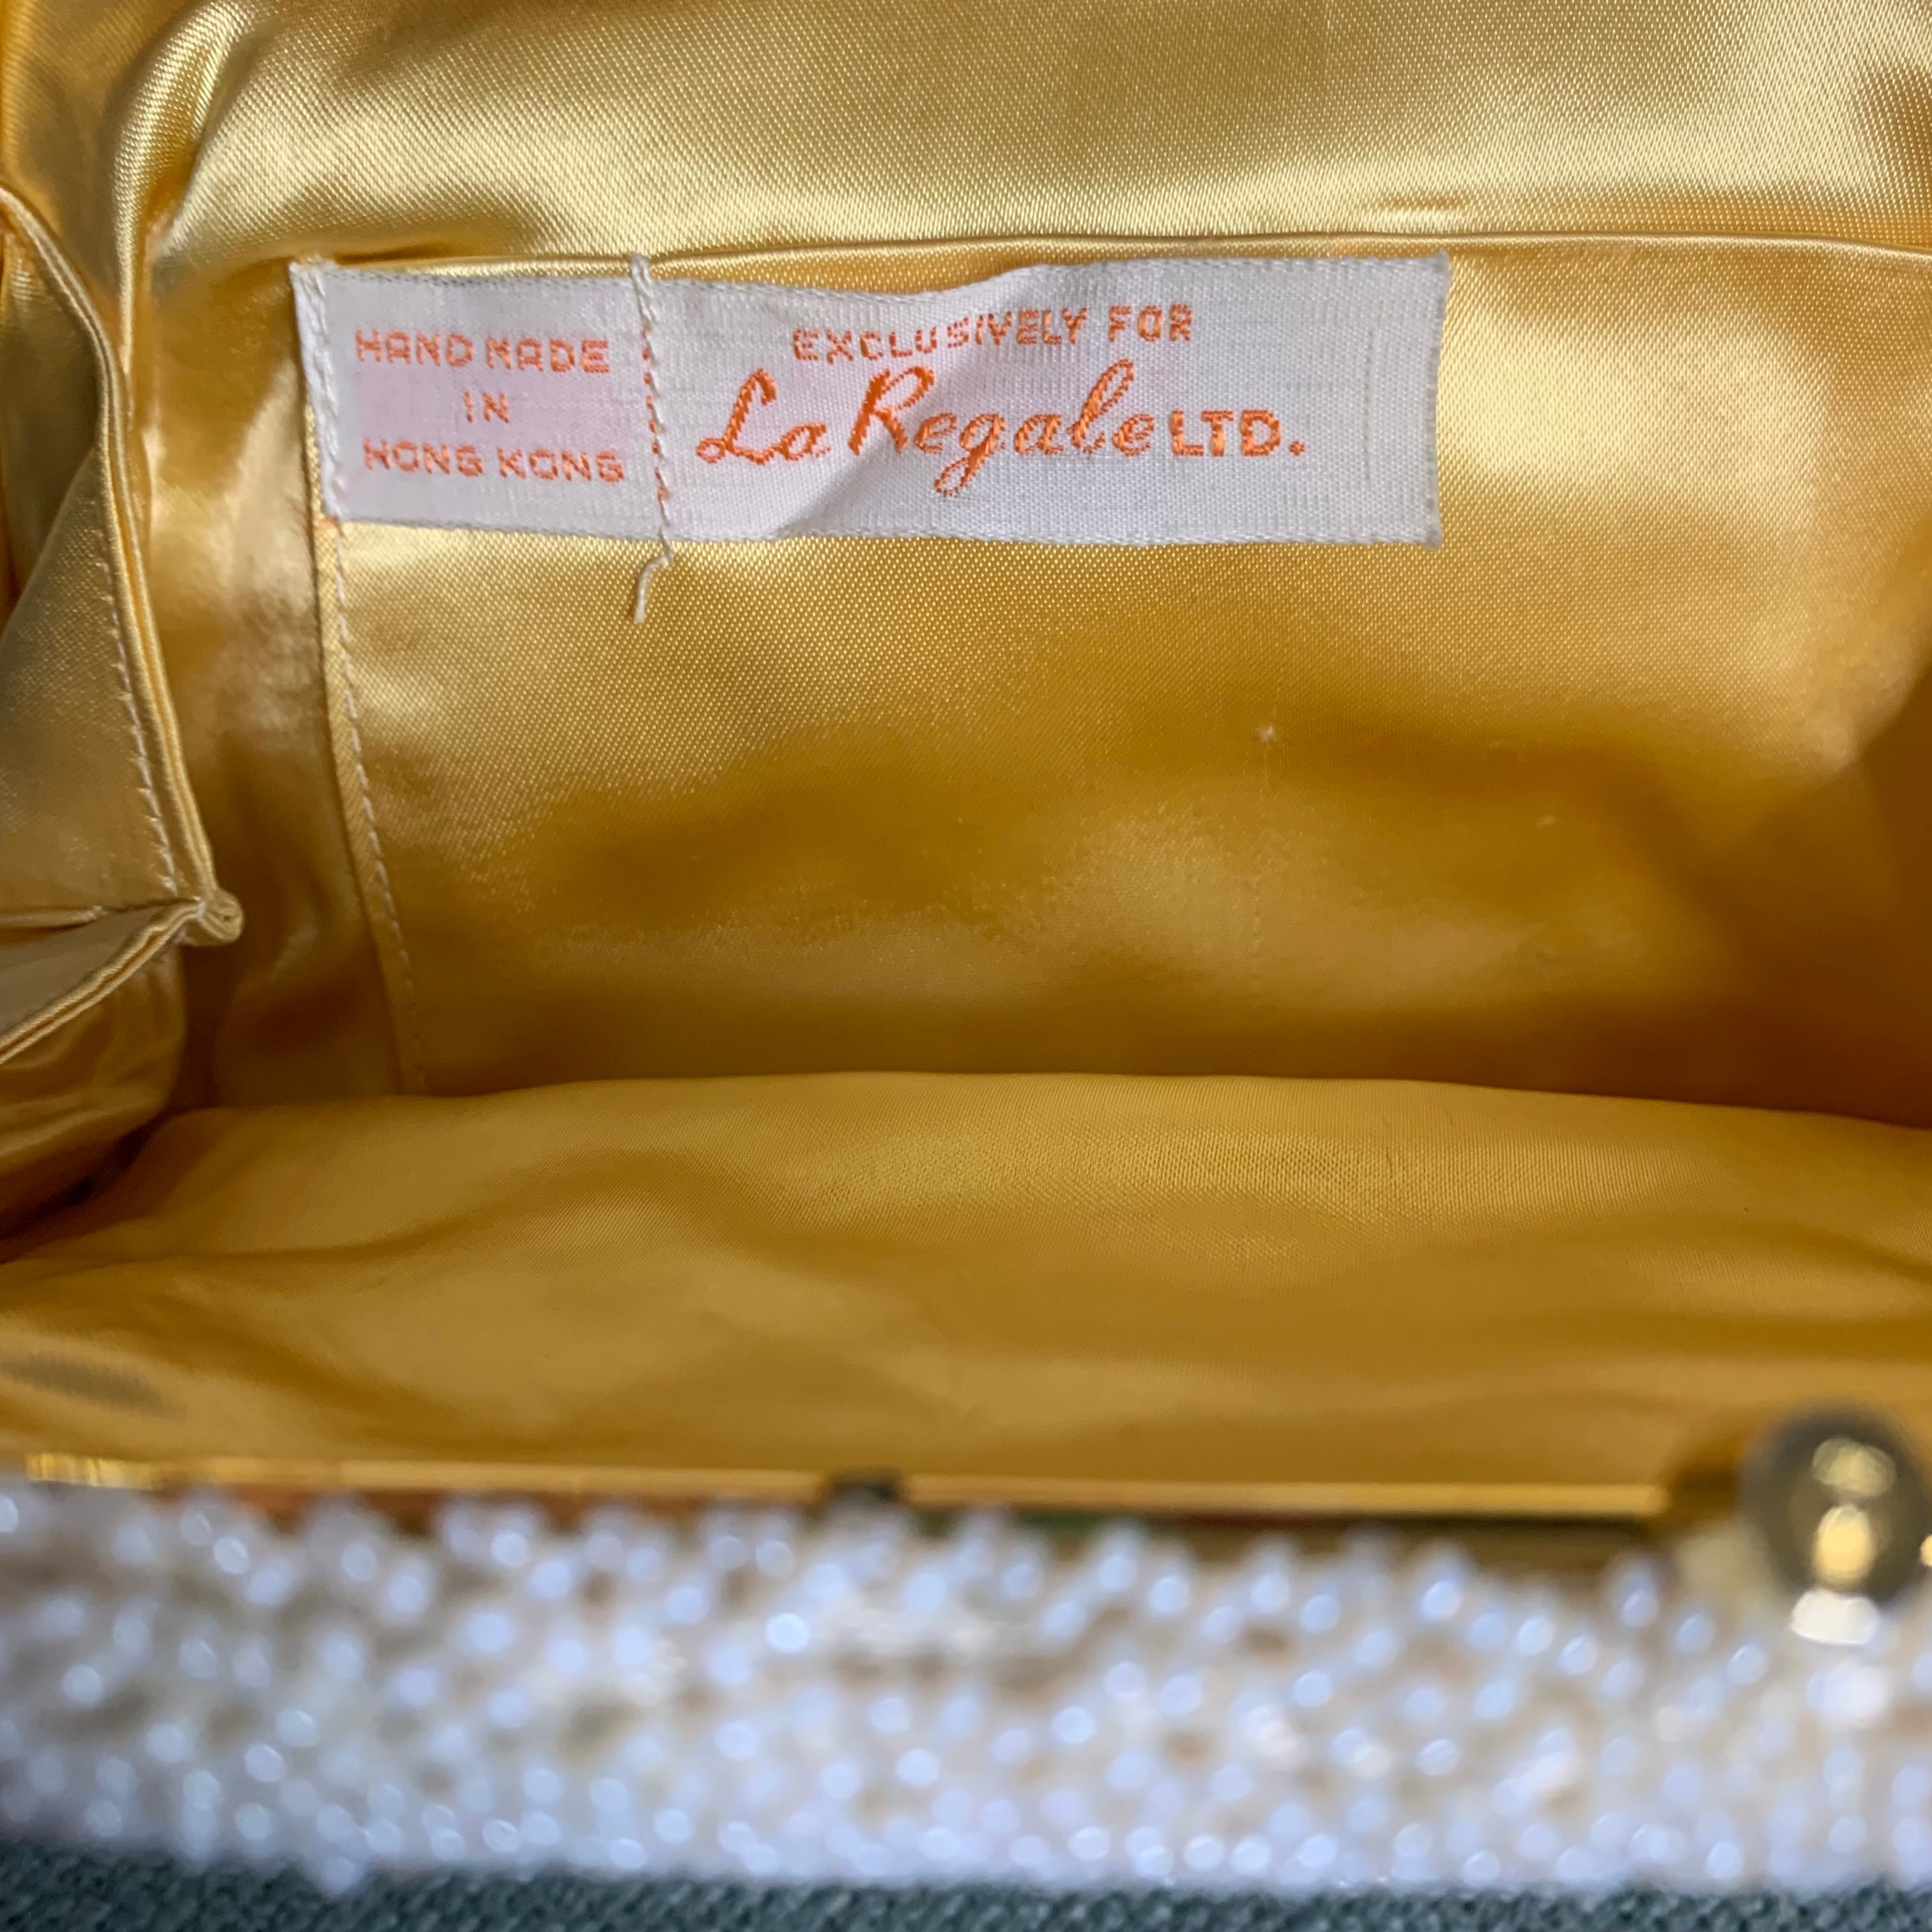 Vintage Handbag by La Regale, 1960's Clutch Evening Bag